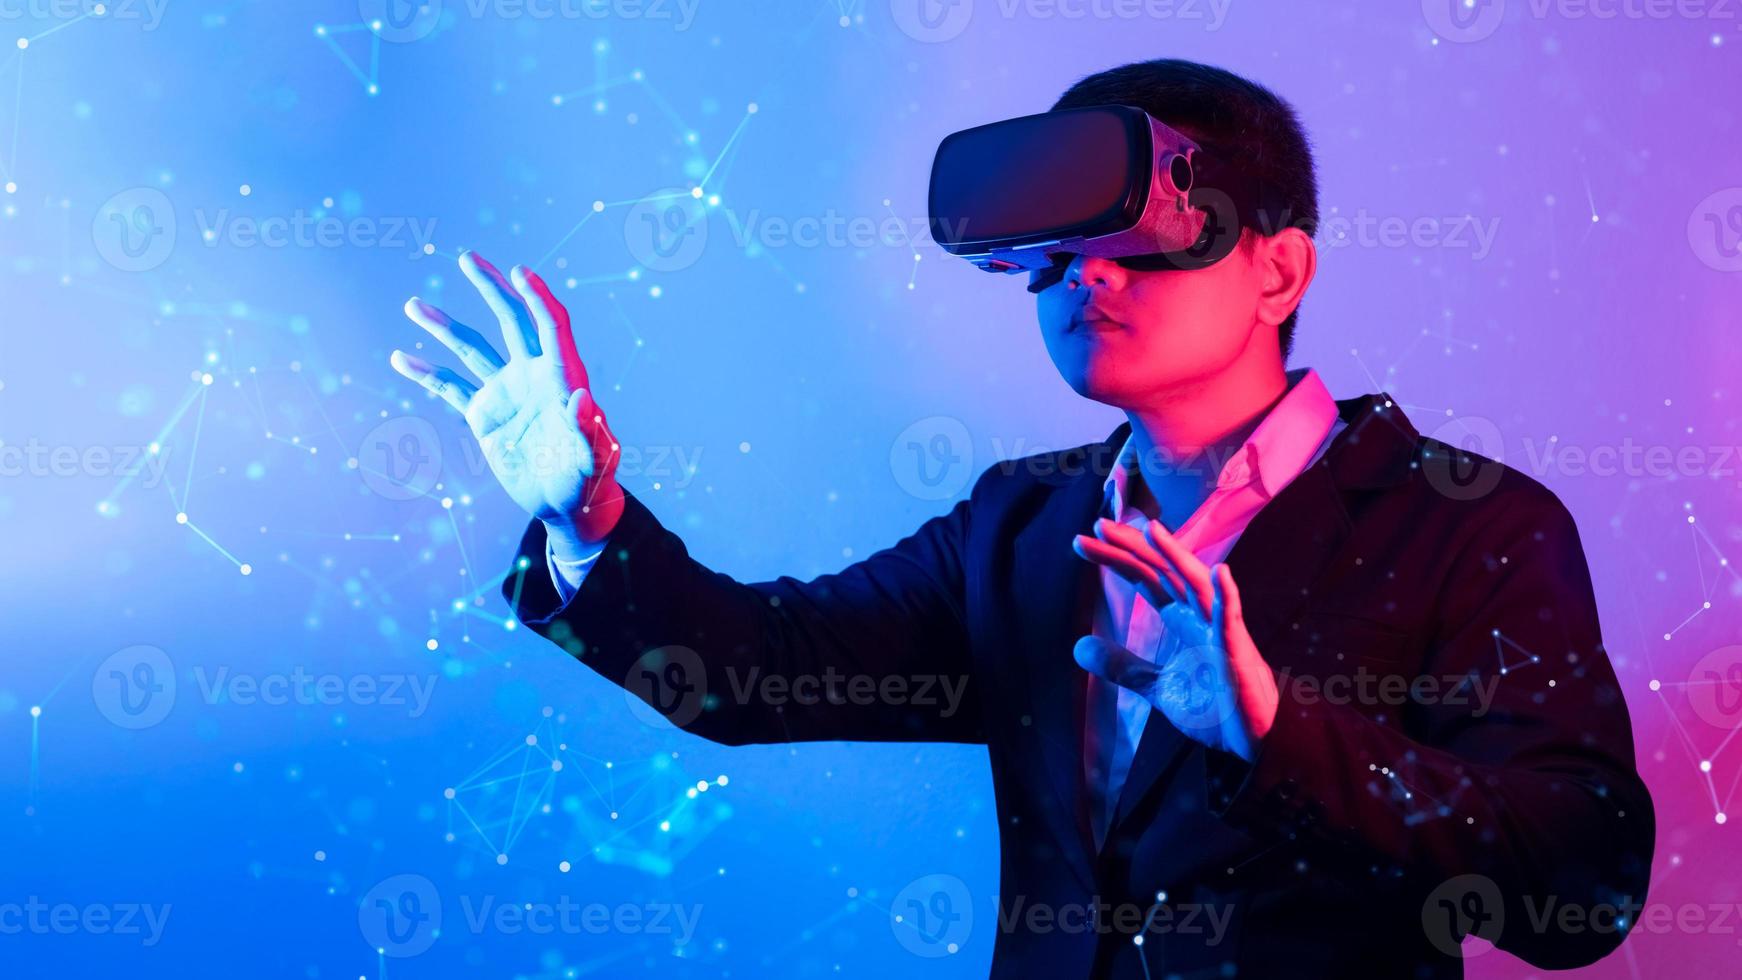 giovane che indossa occhiali vr. concetto di realtà virtuale della tecnologia metaverse. dispositivo di realtà virtuale, simulazione, 3d, ar, vr, innovazione e tecnologia del futuro sui social media. foto